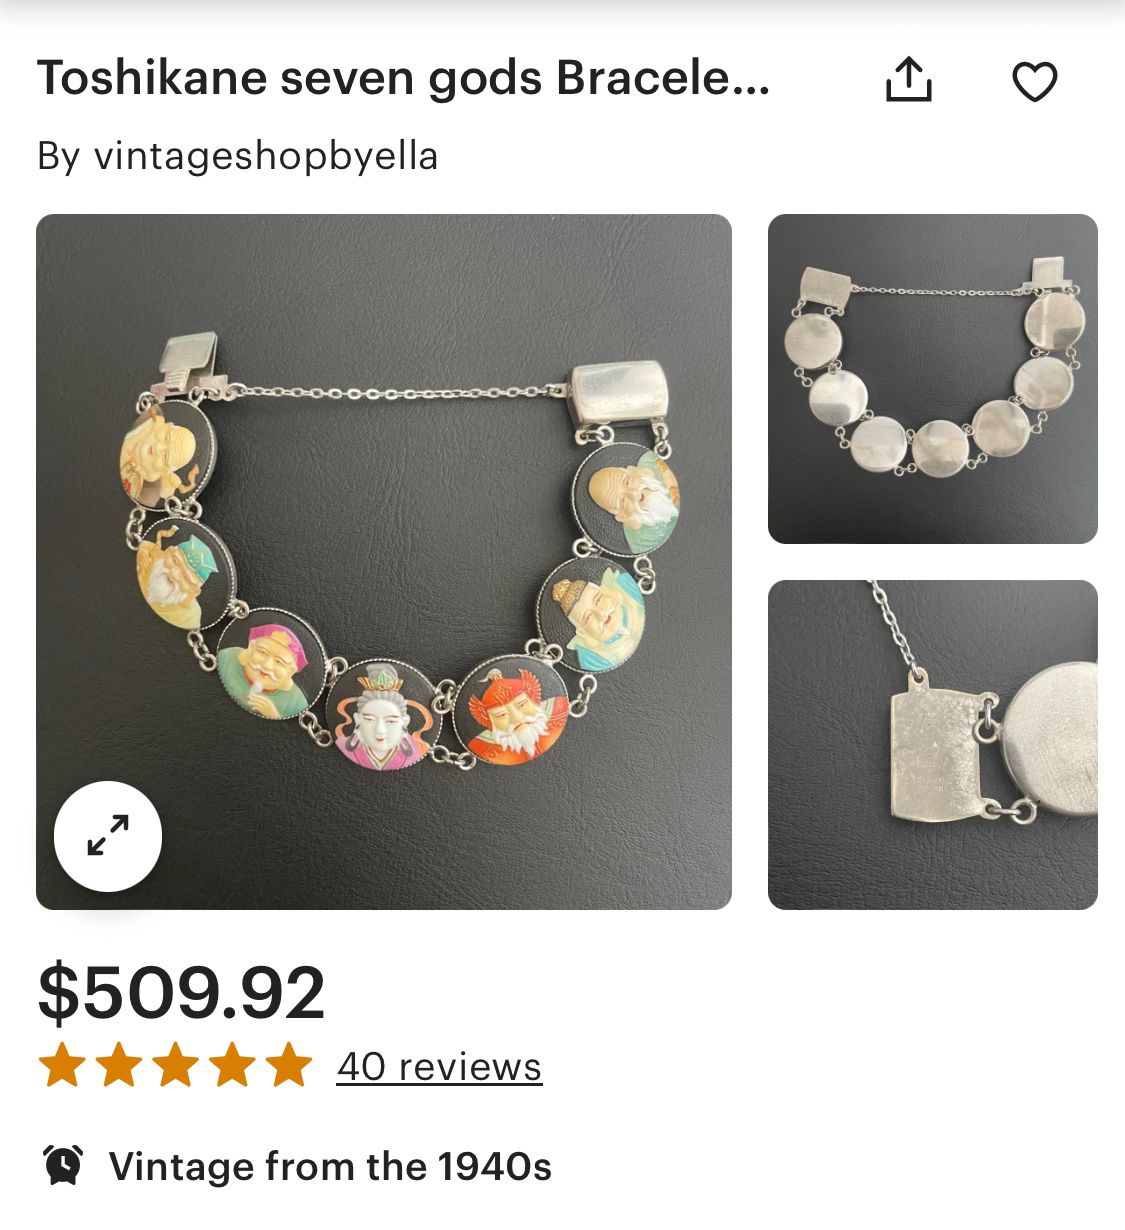 Toshikane 7 Gods Silver Bracelet